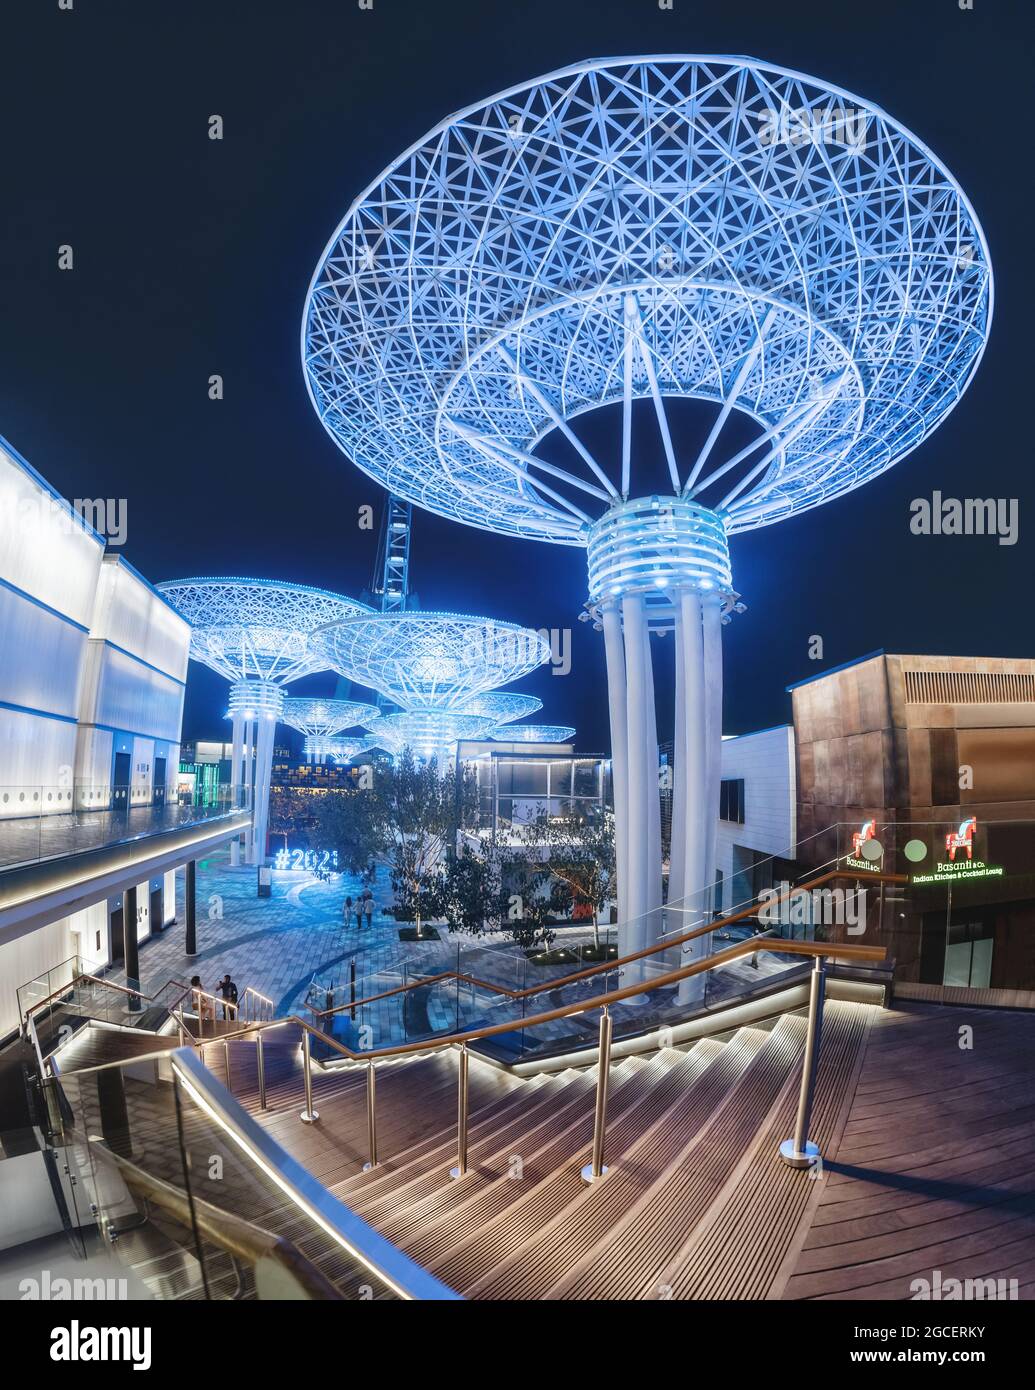 22 février 2021, Dubaï, Émirats Arabes Unis : attraction touristique populaire de Dubaï - Neon, super arbres en métal futuriste lumineux sur Blue Waters Island. Banque D'Images